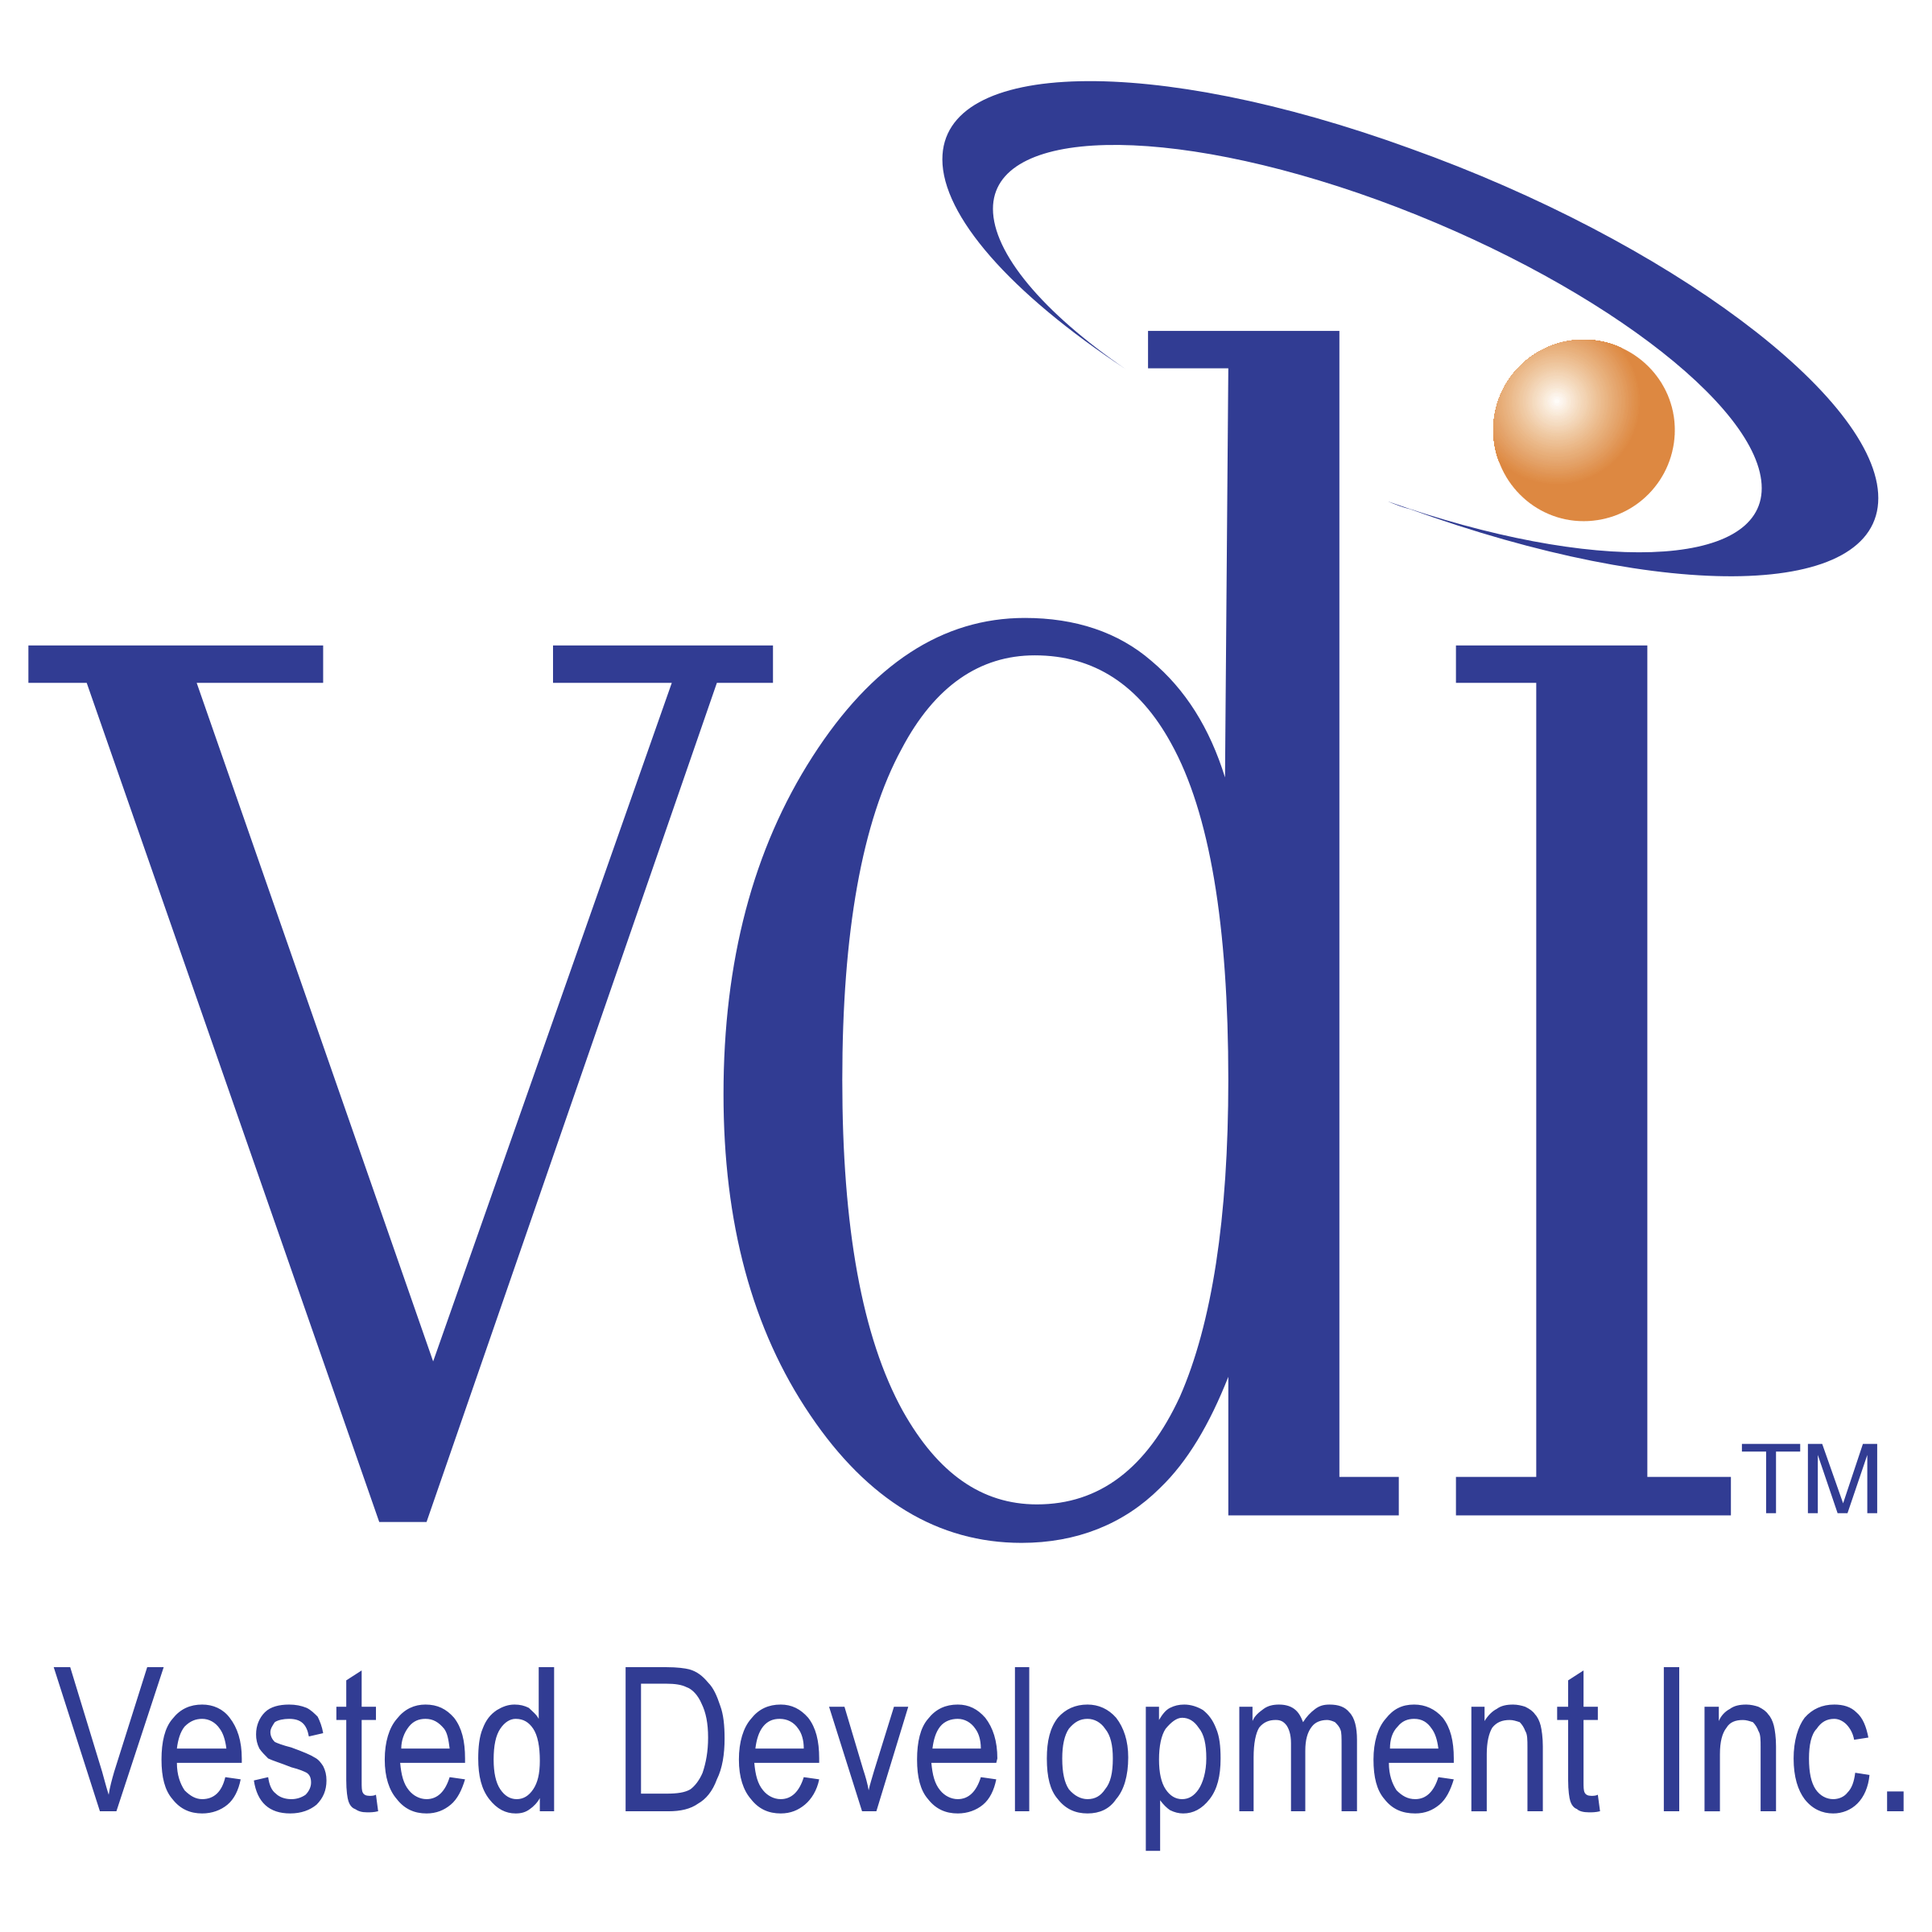 VDI Logo - VDI Logo PNG Transparent & SVG Vector - Freebie Supply